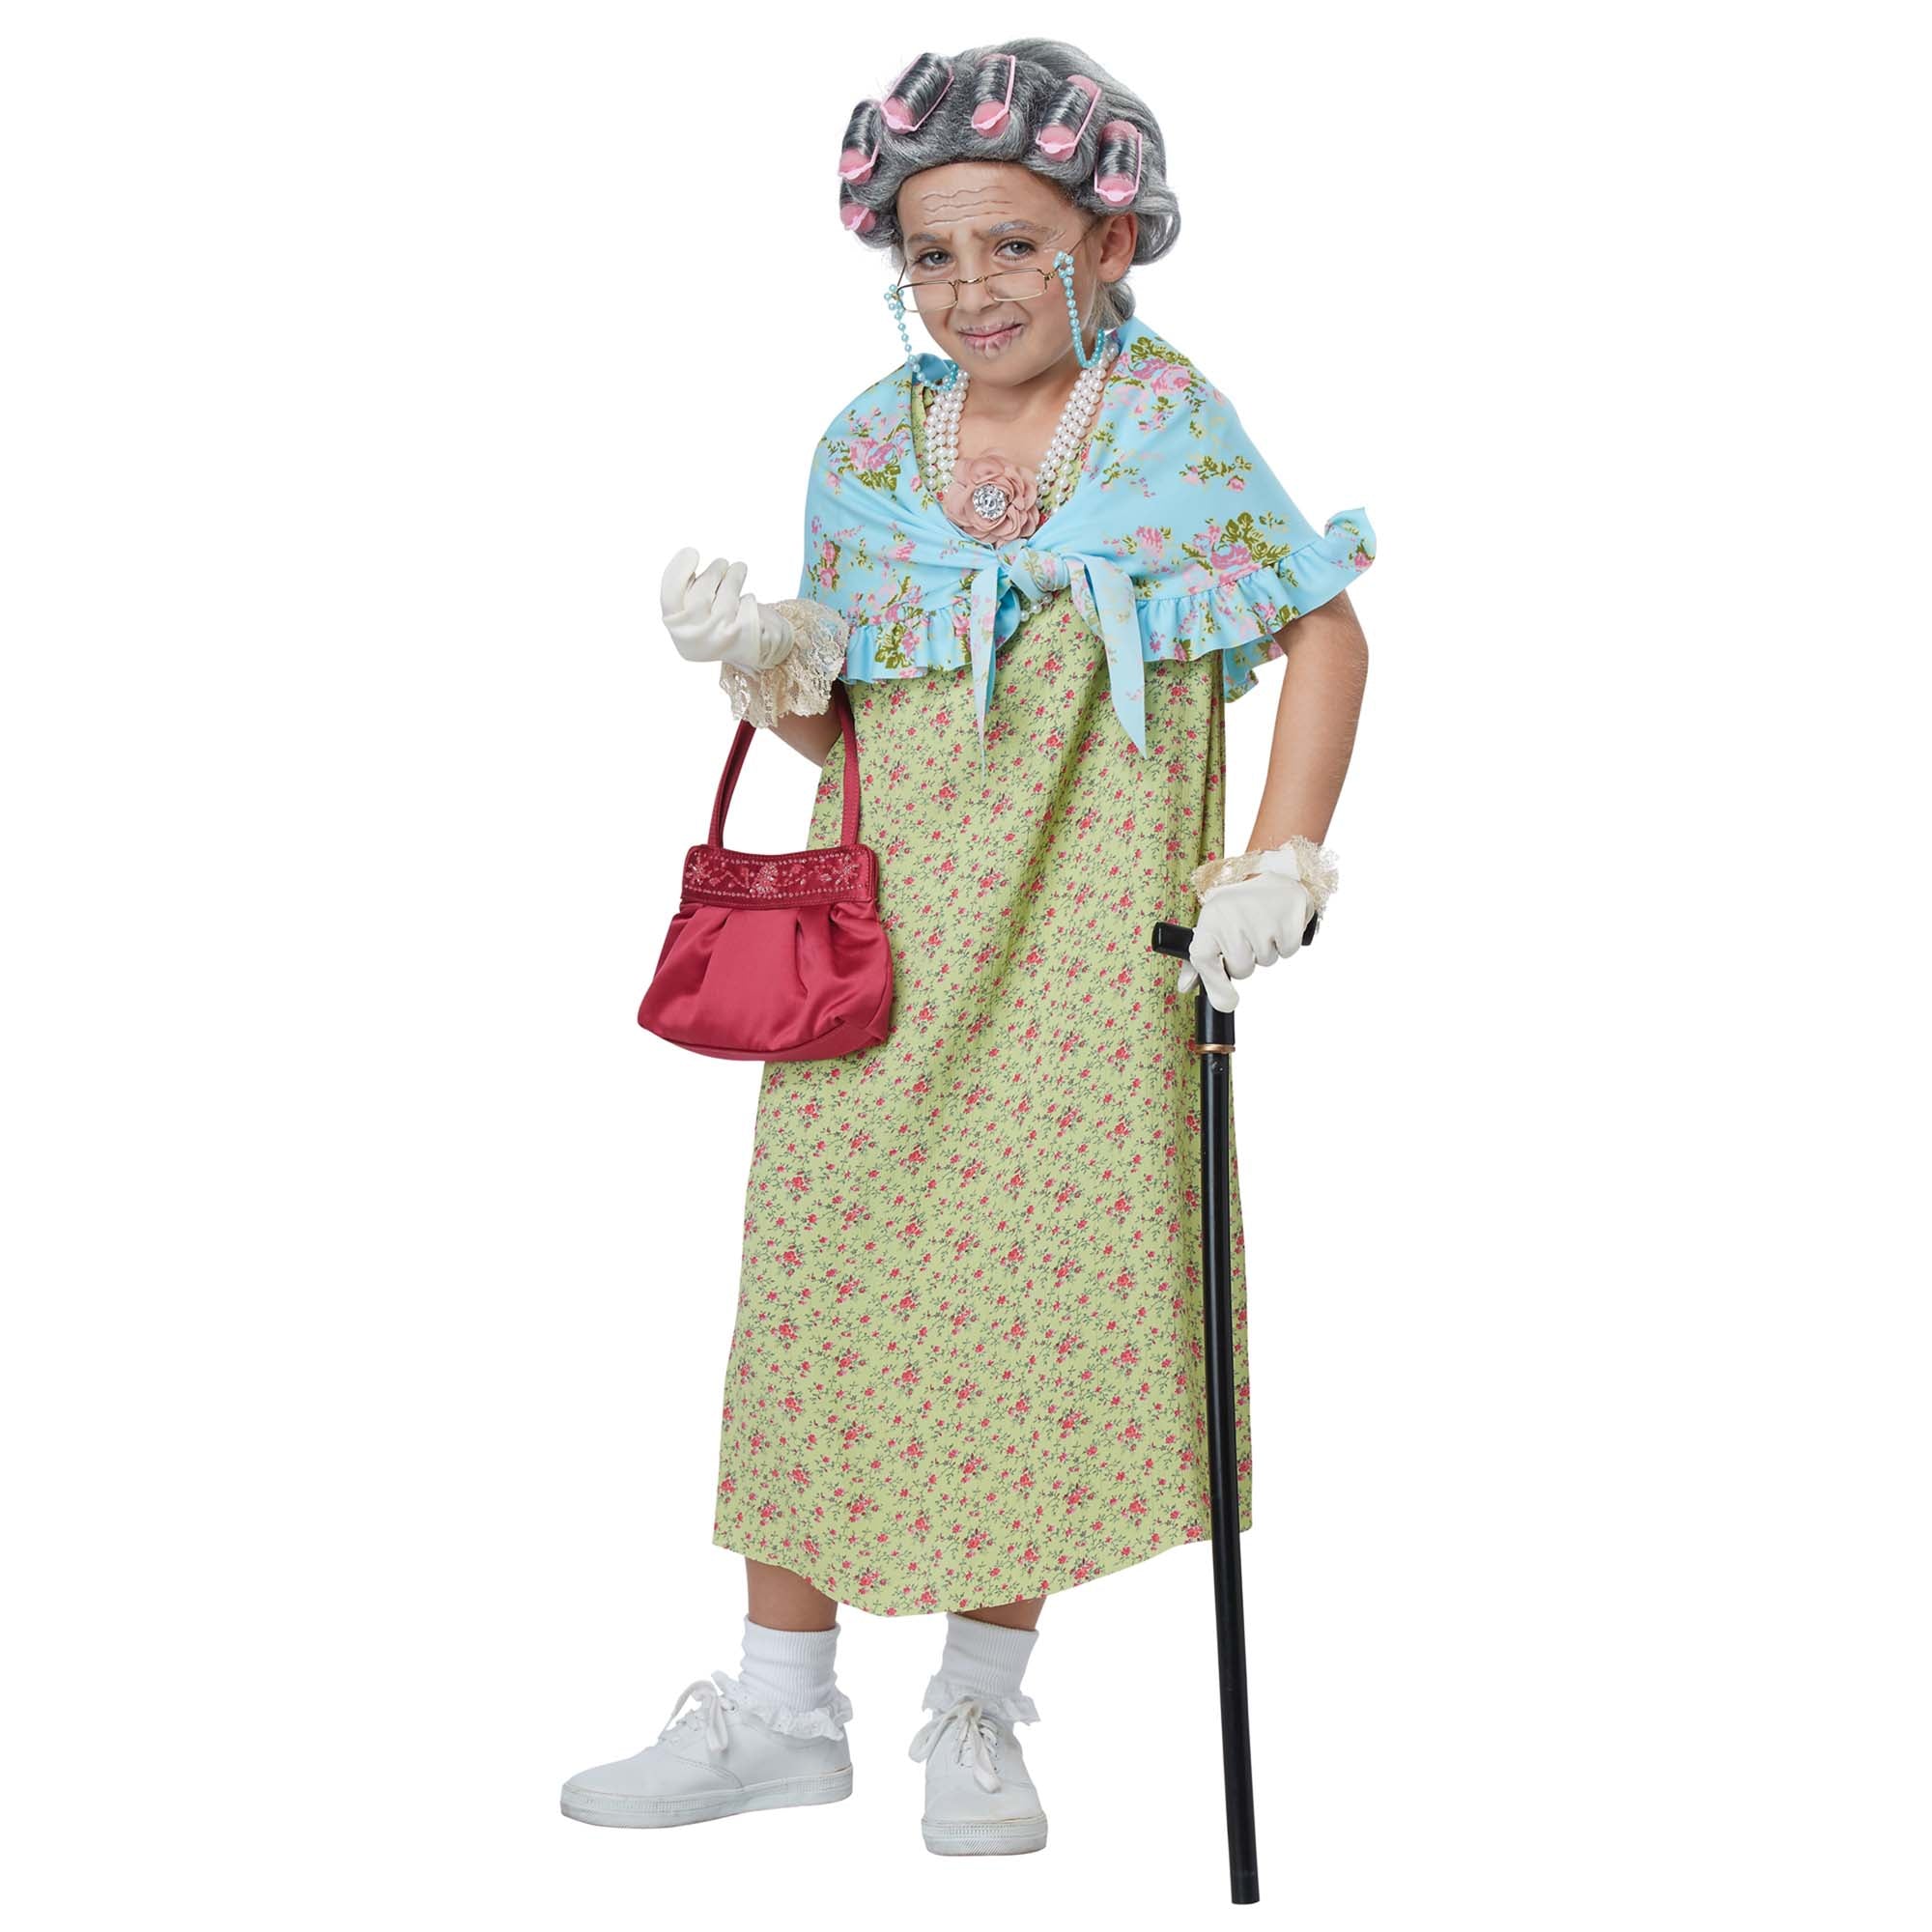 Grand-mère - La cabine à costumes